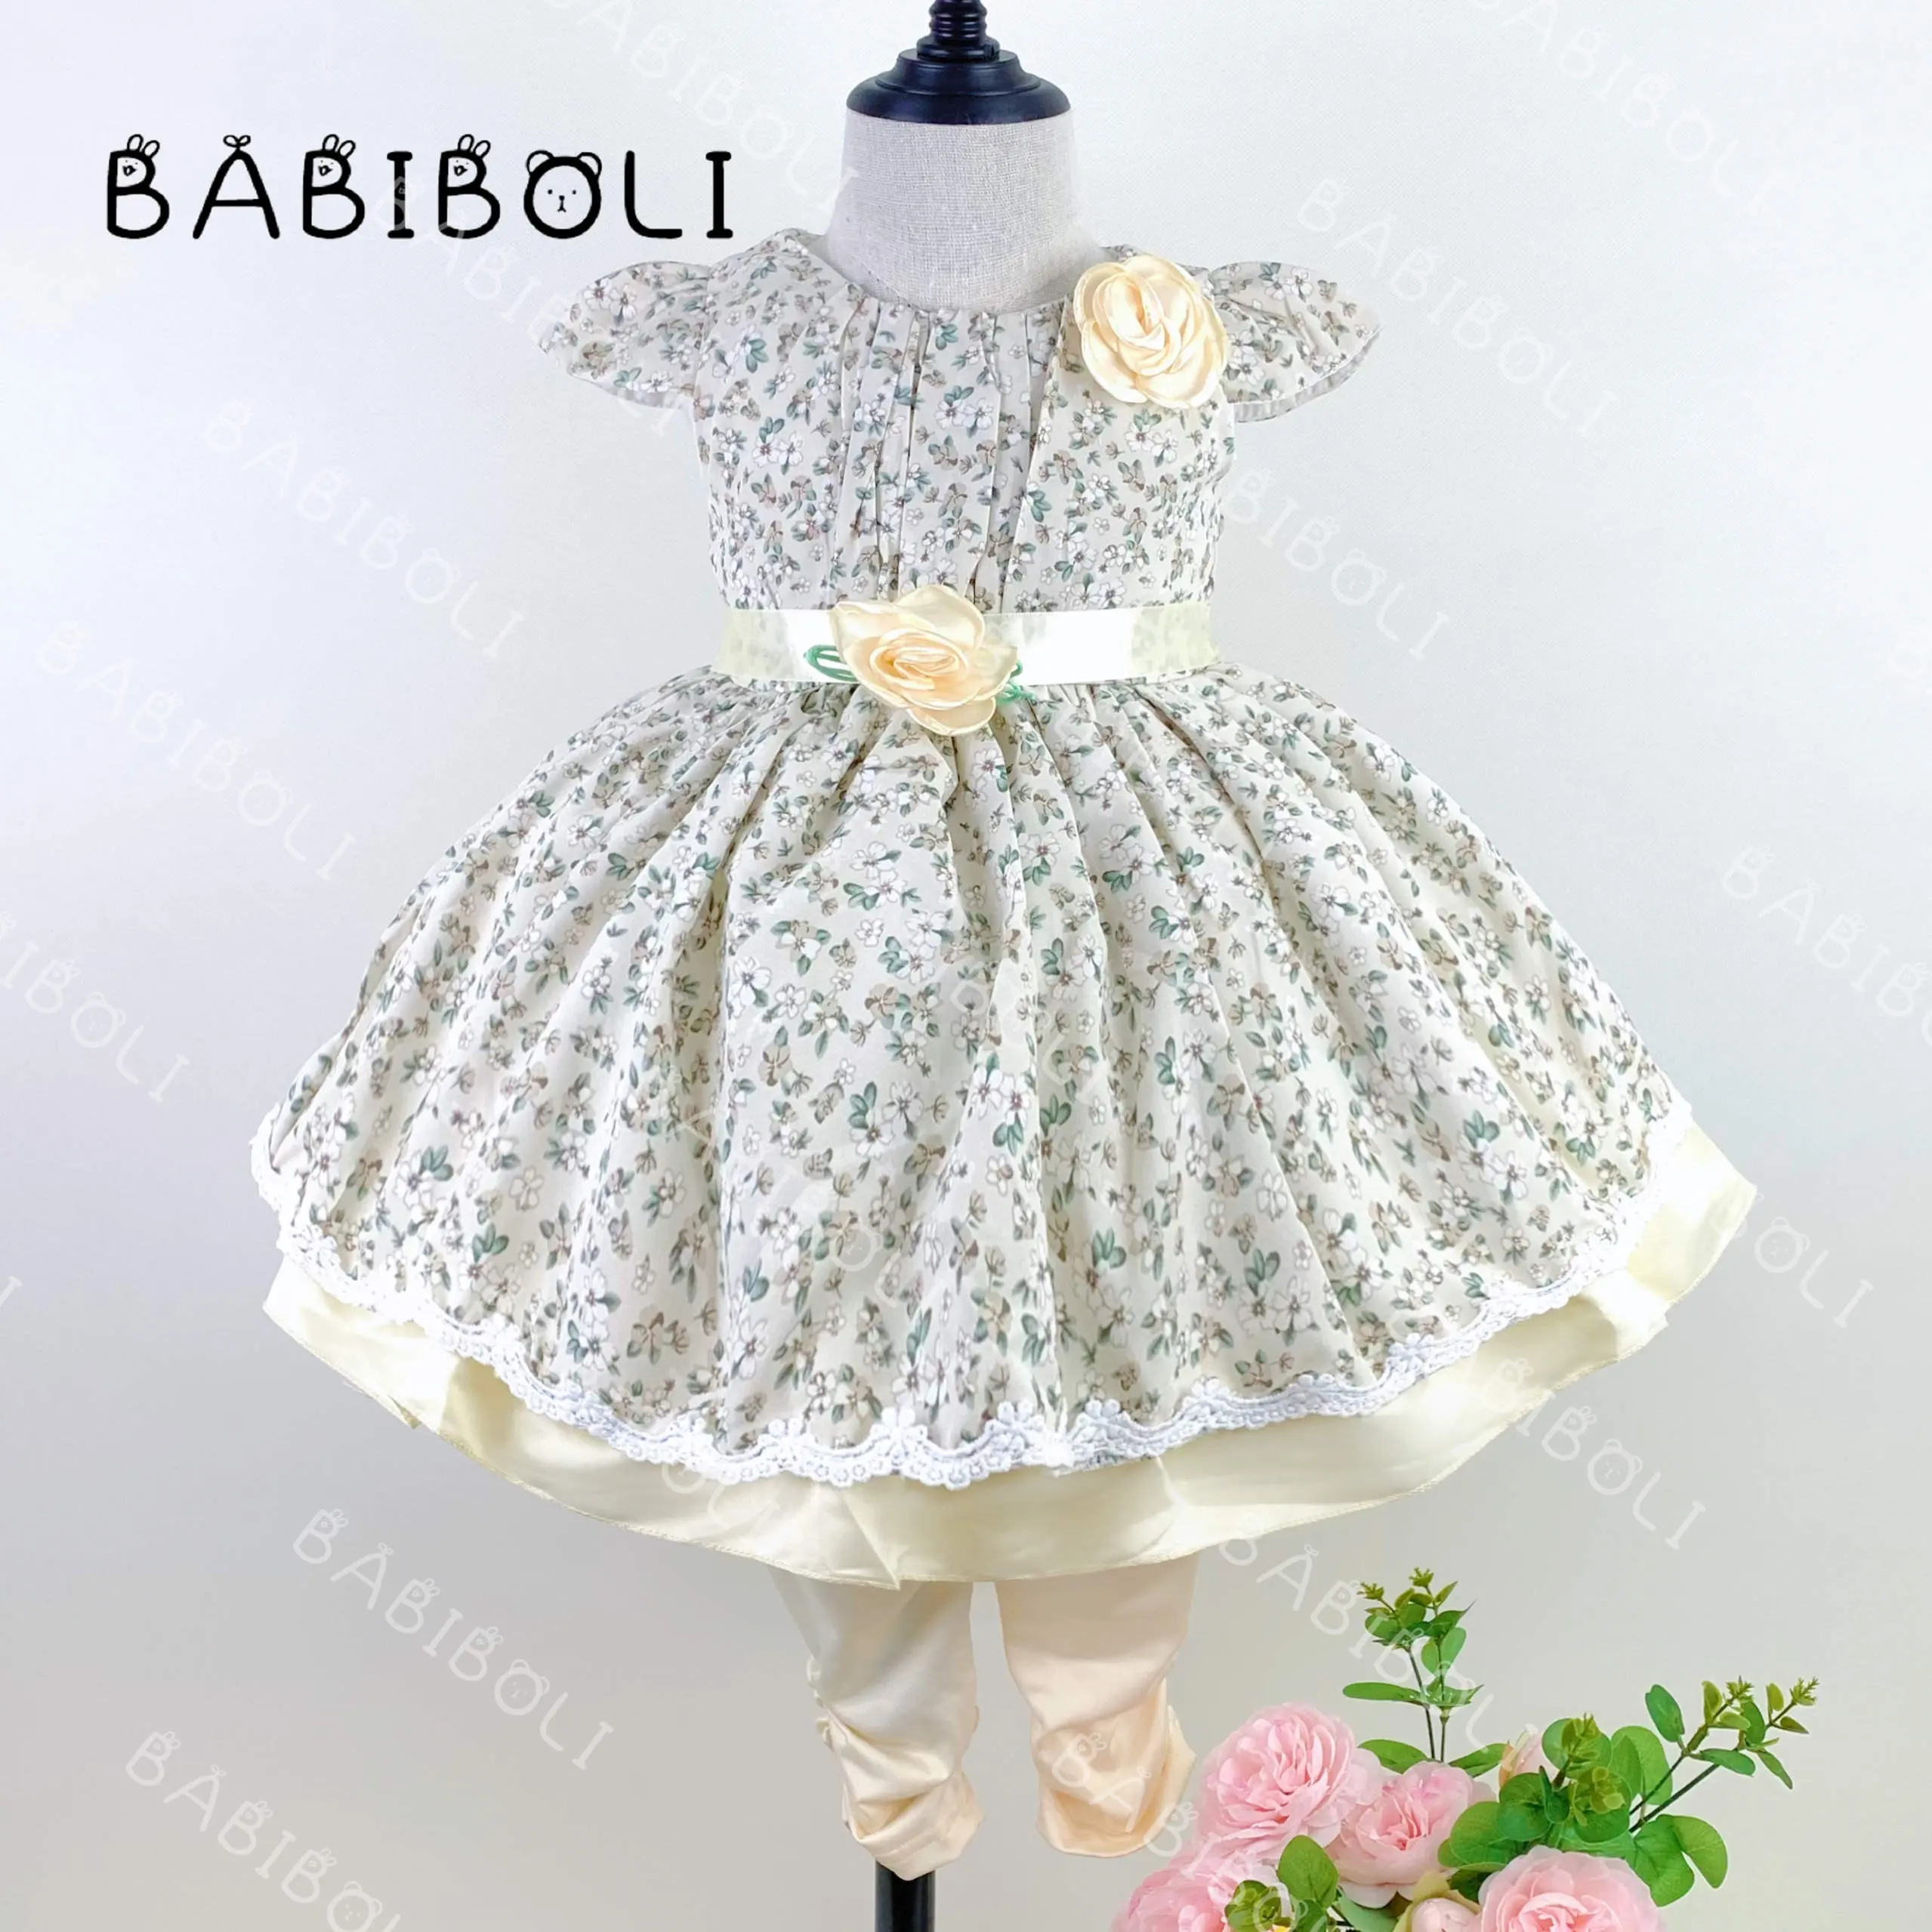 Babiboli ชุดเด็กผู้หญิง0-2ปี, ชุดเดรสลายดอกไม้ครีมเสื้อผ้าเด็กผู้หญิง